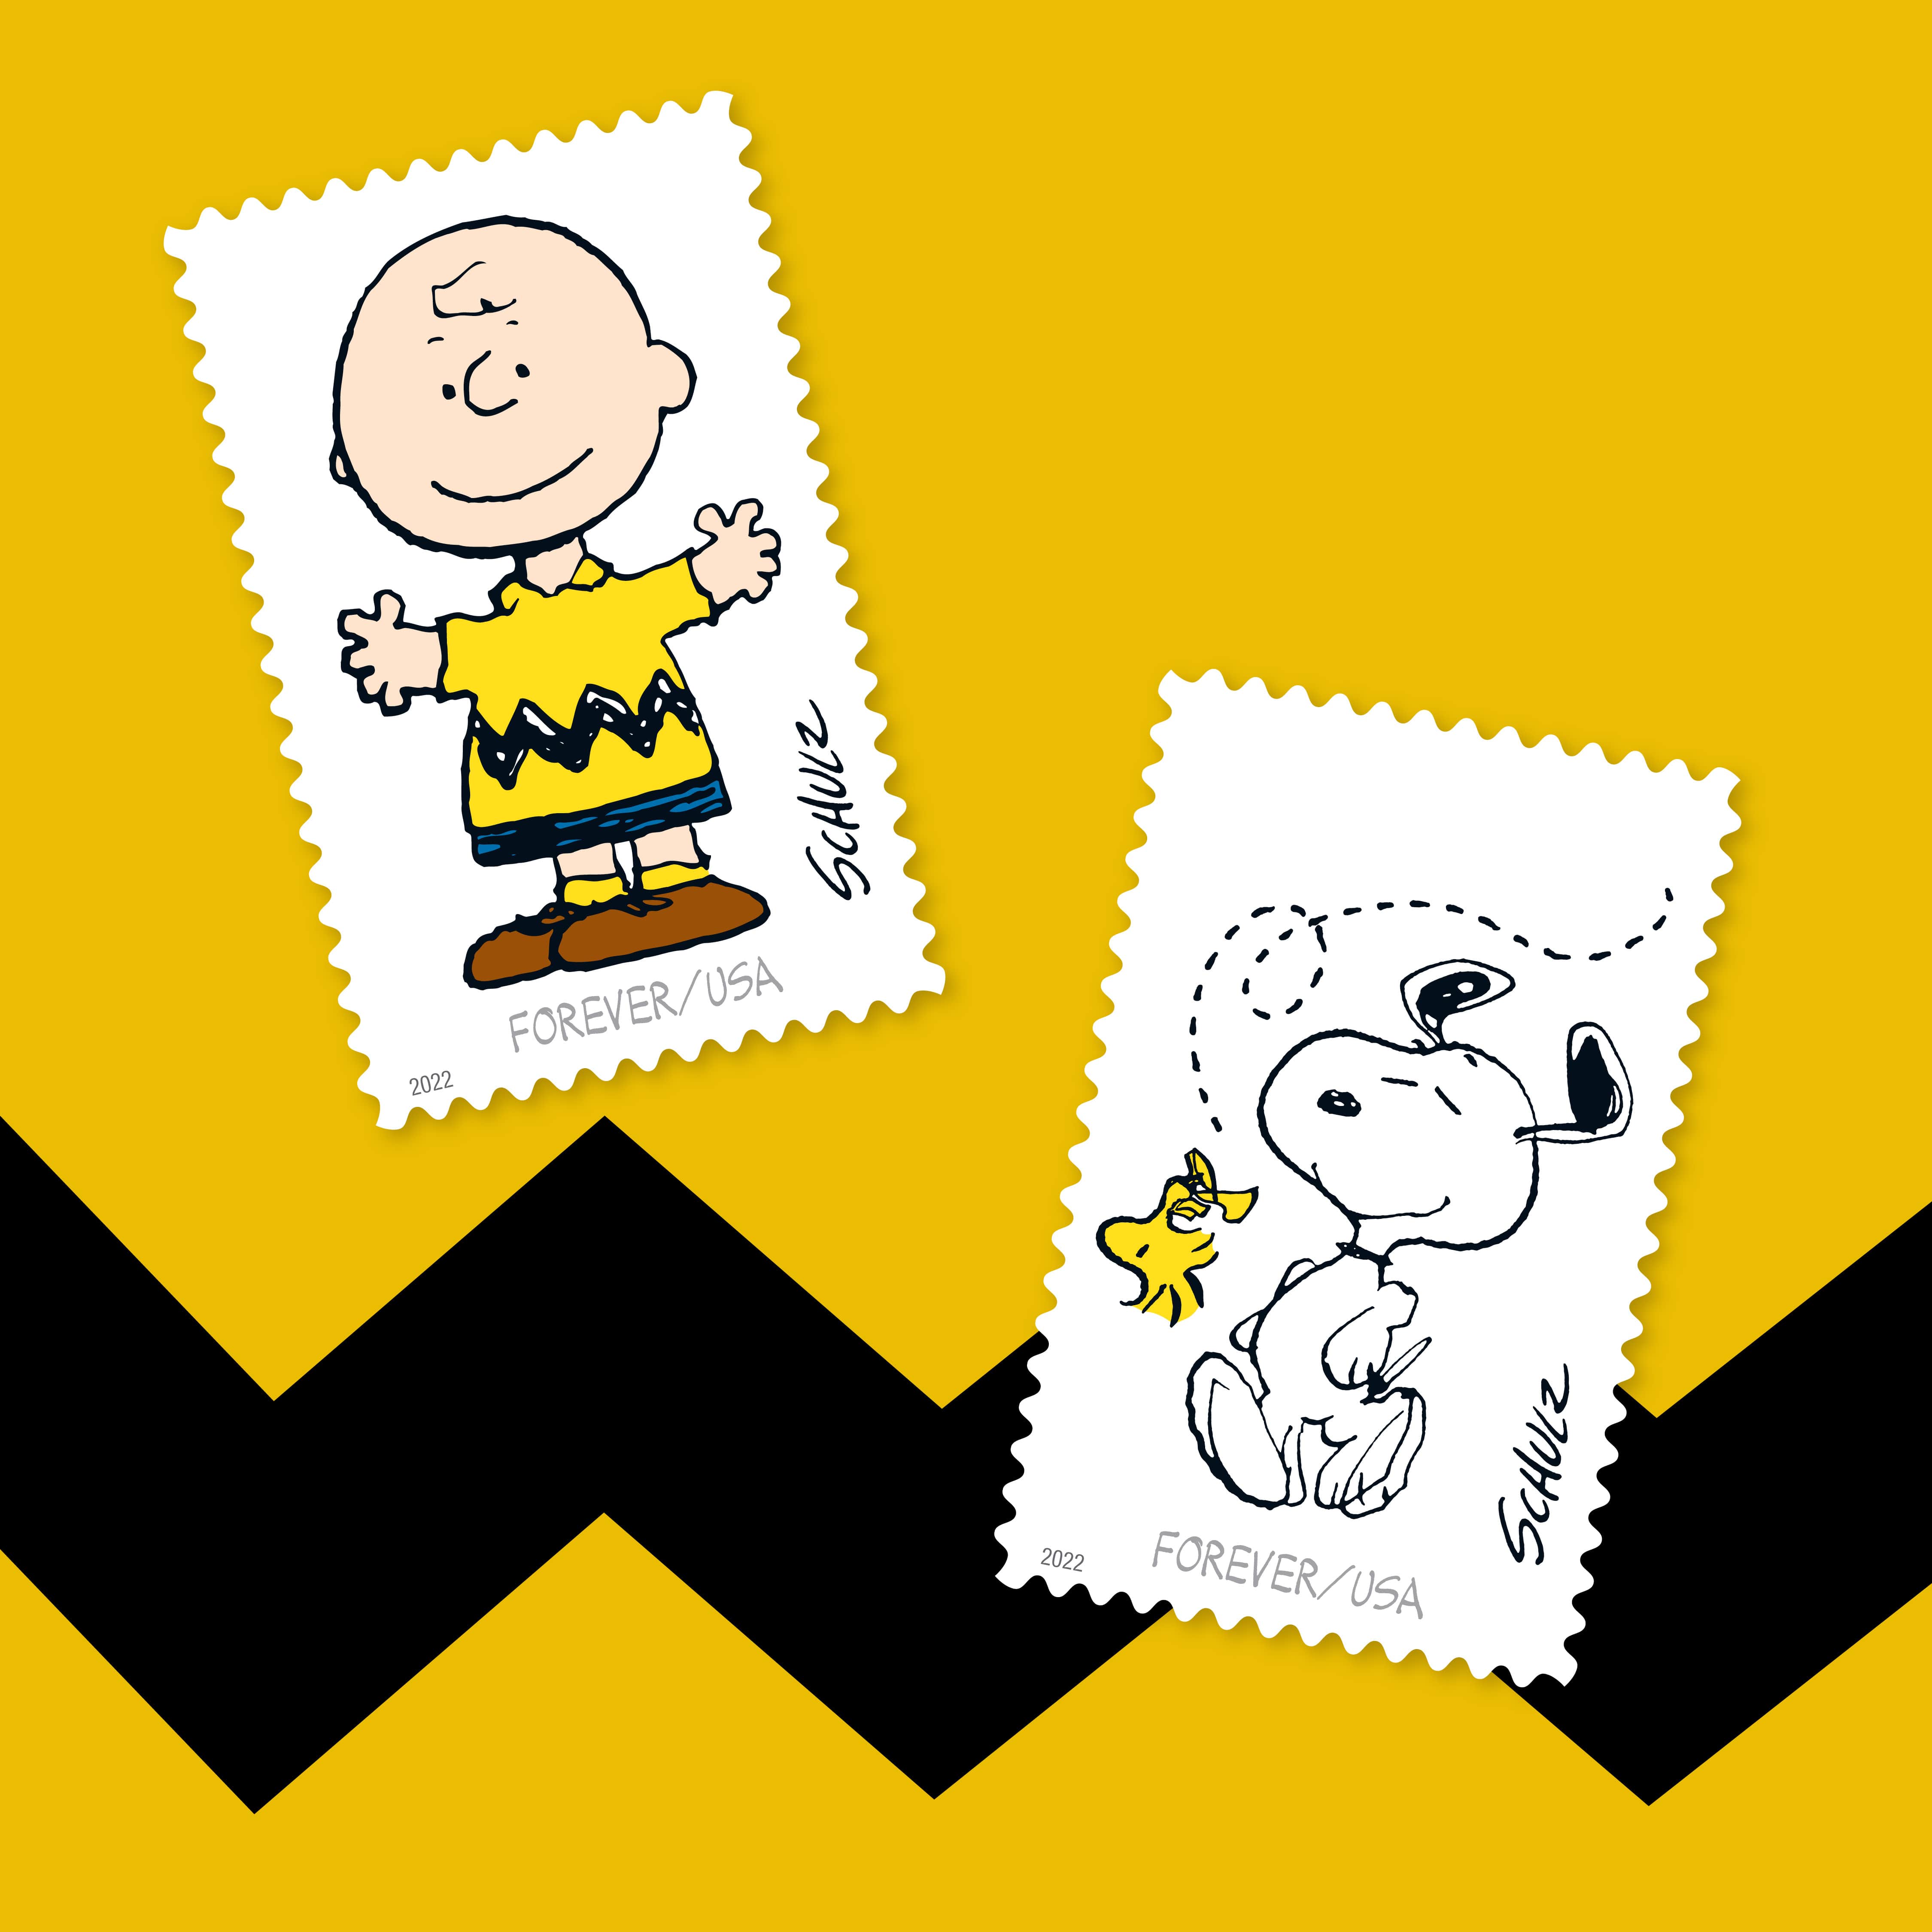 Schulz Stamps